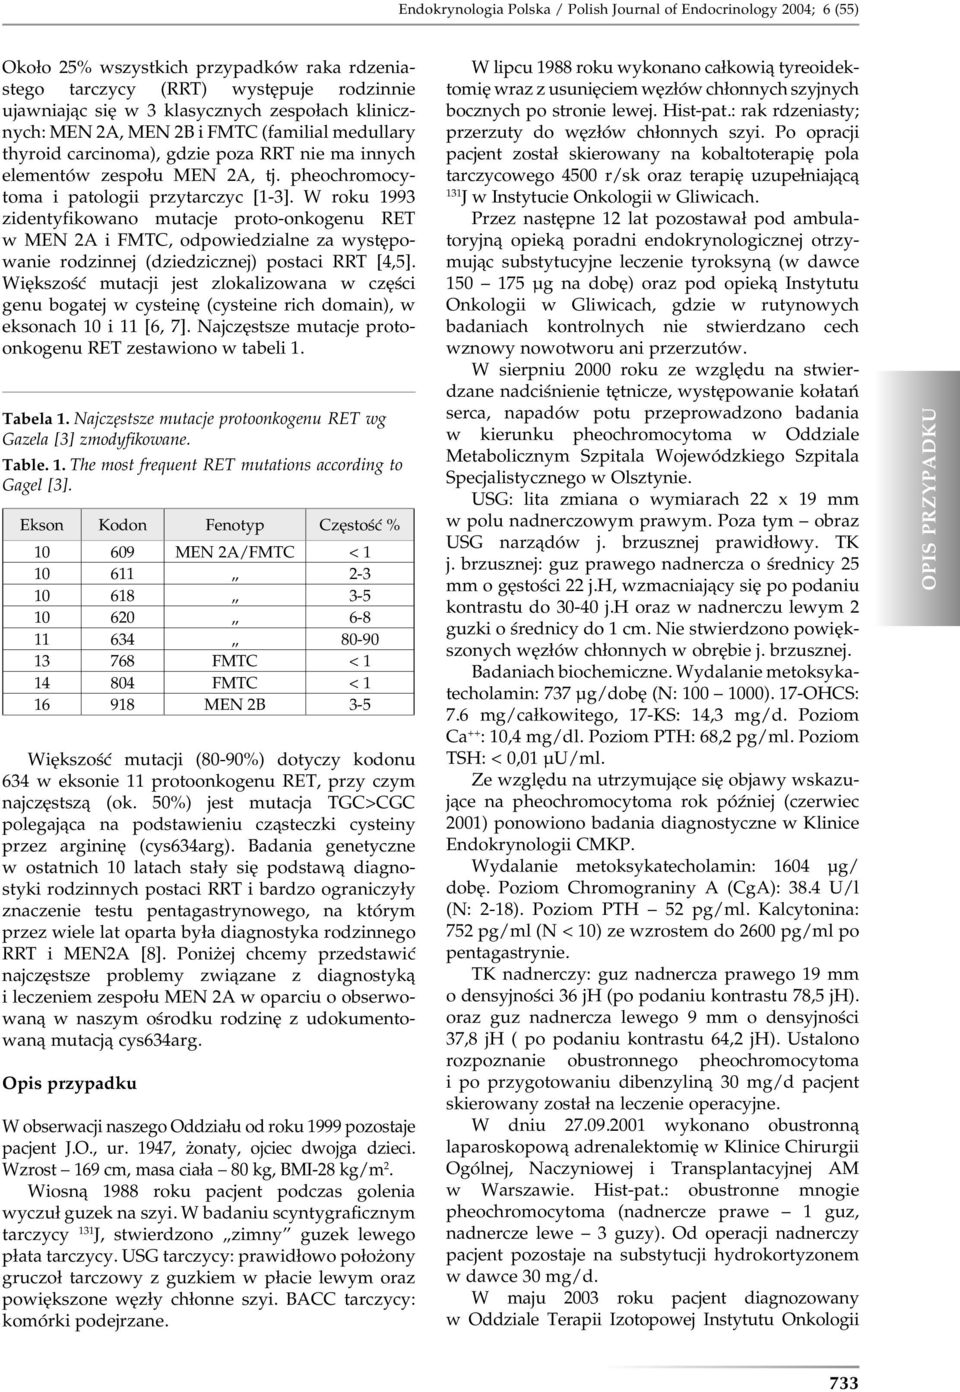 W roku 1993 zidentyfikowano mutacje proto-onkogenu RET w MEN 2A i FMTC, odpowiedzialne za występowanie rodzinnej (dziedzicznej) postaci RRT [4,5].